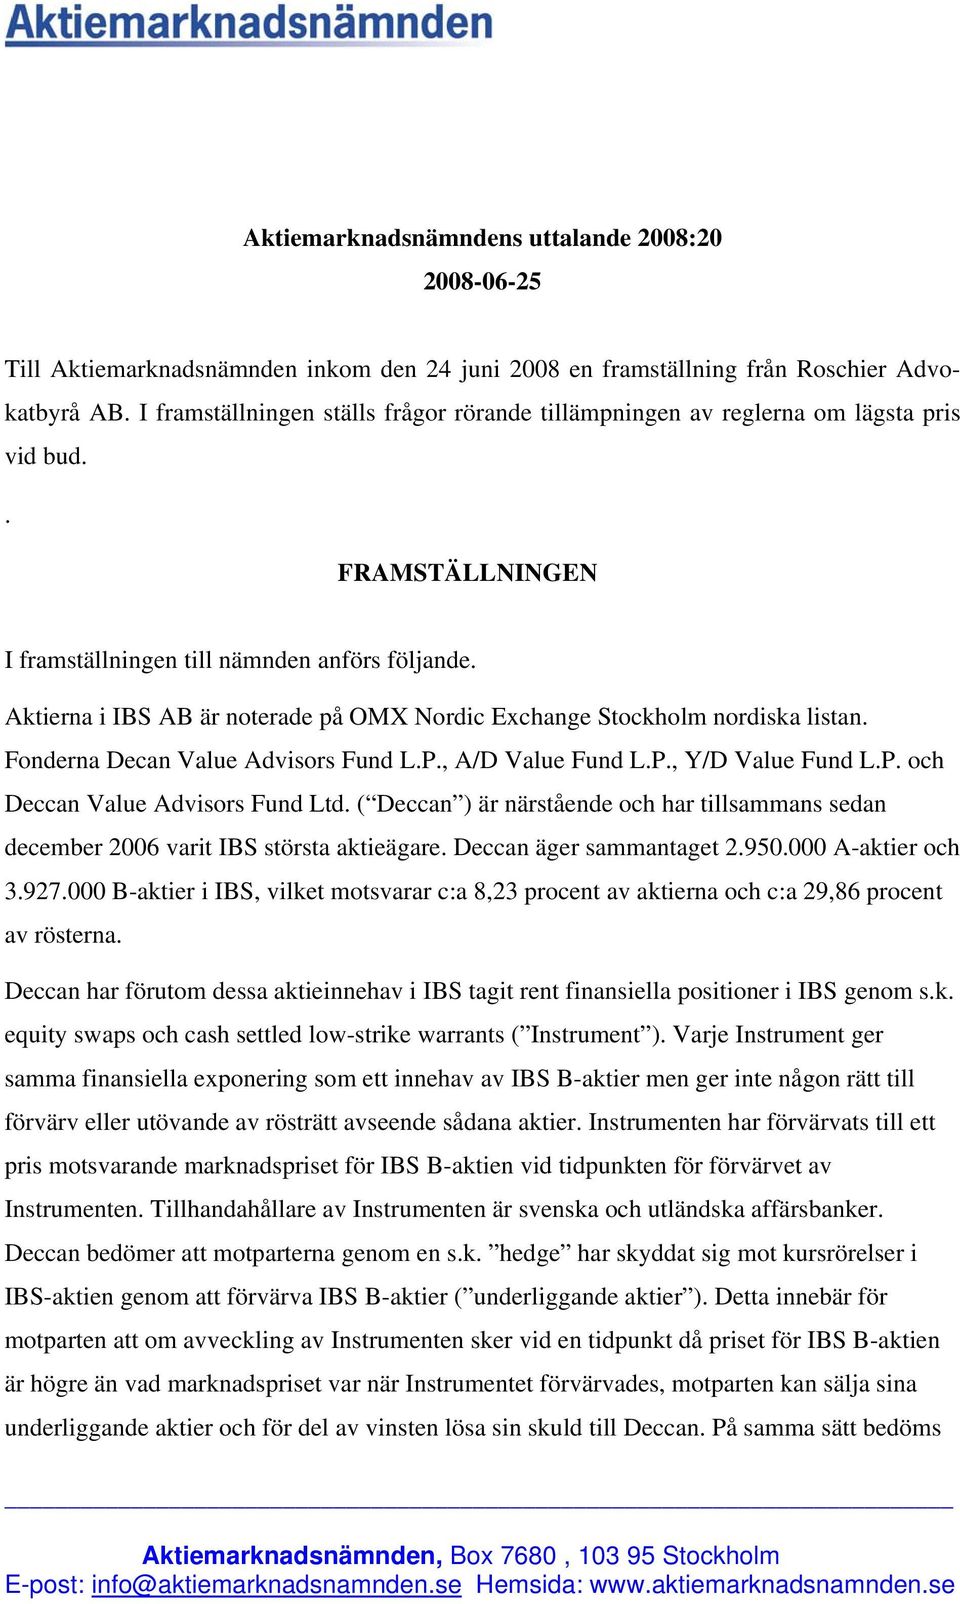 Aktierna i IBS AB är noterade på OMX Nordic Exchange Stockholm nordiska listan. Fonderna Decan Value Advisors Fund L.P., A/D Value Fund L.P., Y/D Value Fund L.P. och Deccan Value Advisors Fund Ltd.